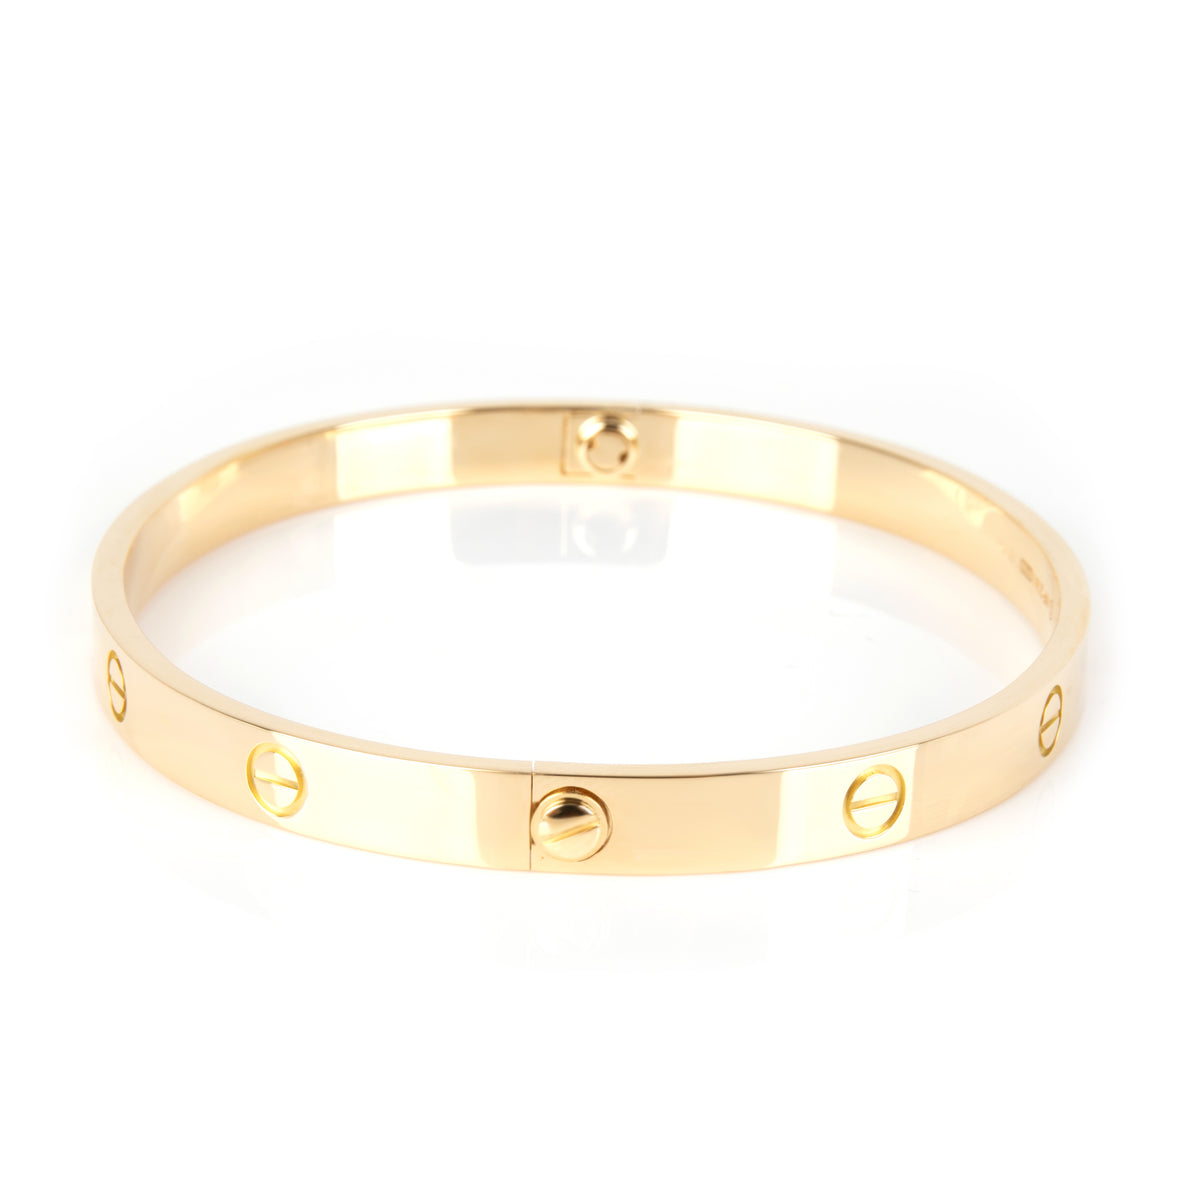 Cartier Love Bracelet in 18K Yellow Gold Size 21